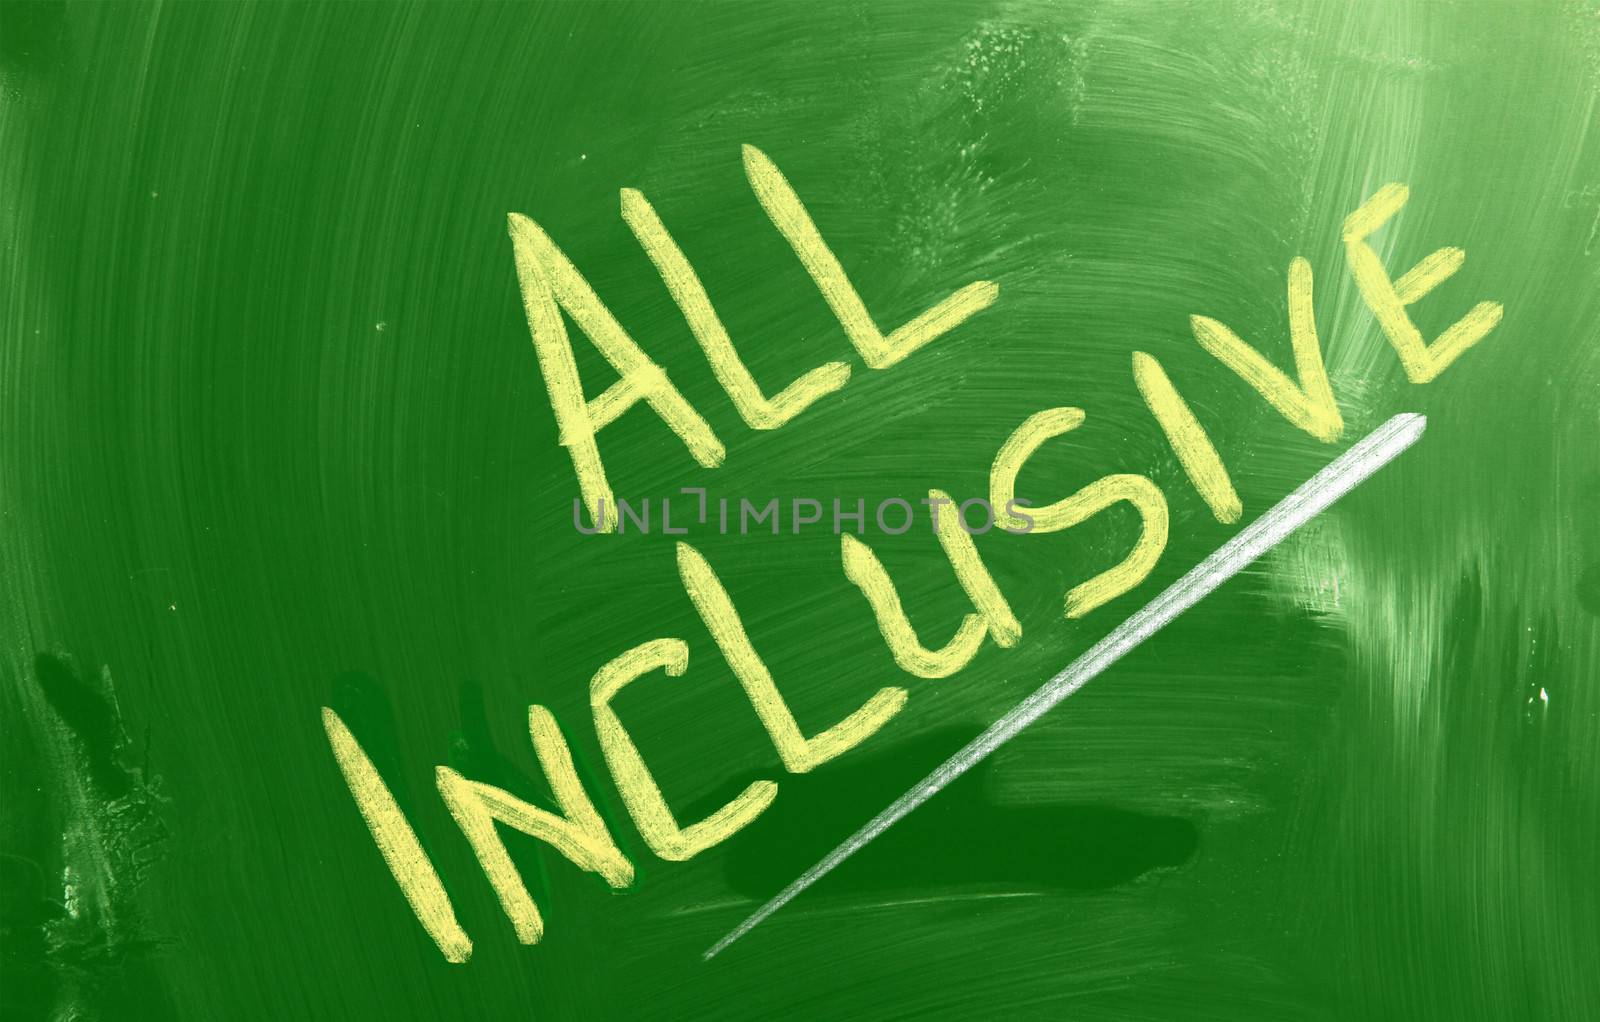 All Inclusive Concept by KrasimiraNevenova